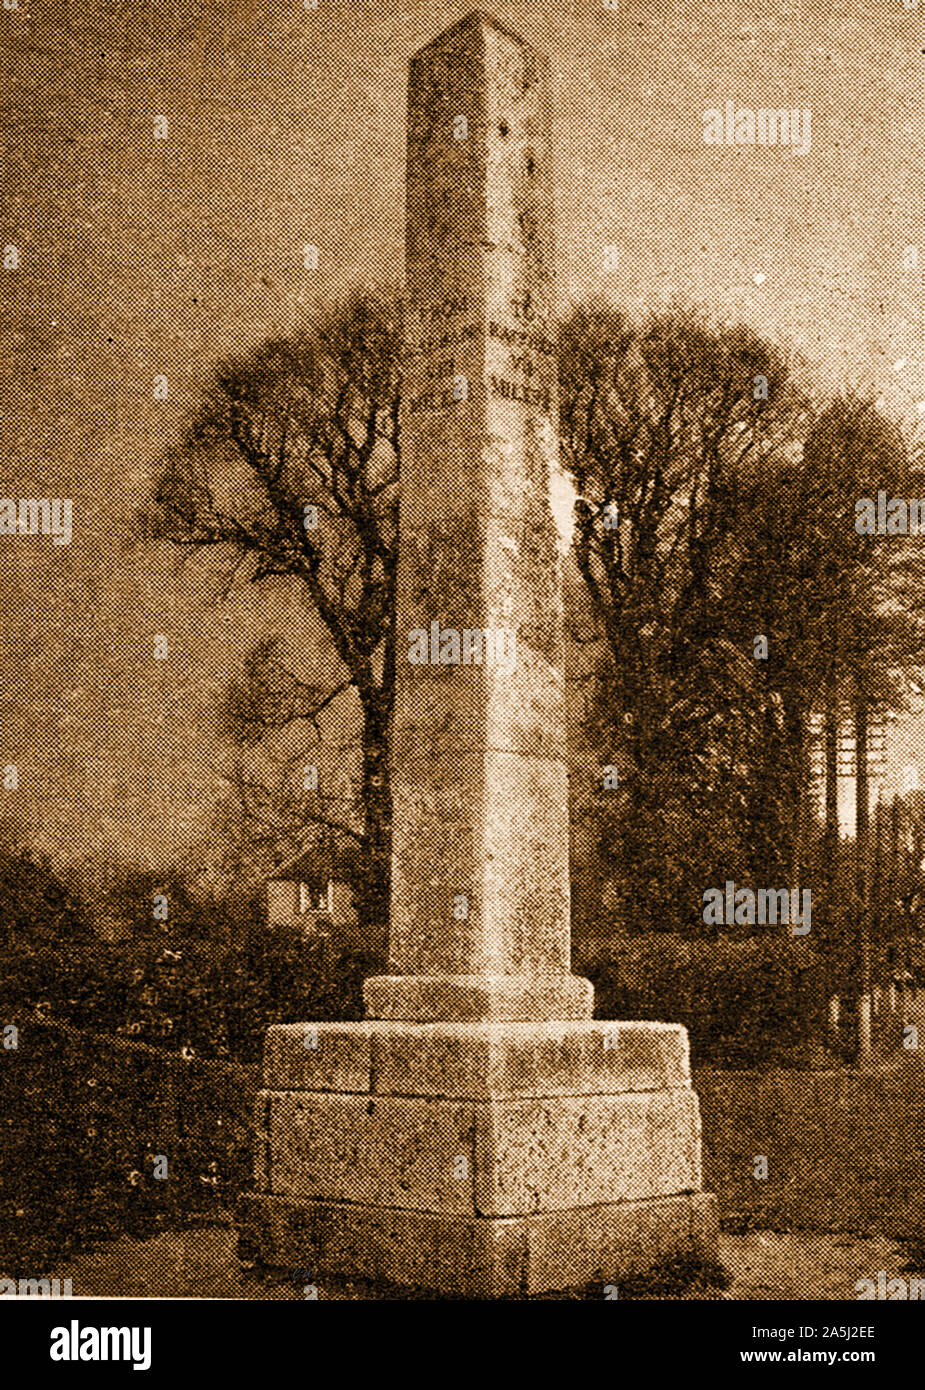 La GUERRA DEI ROSES - Hadley alta Pietra, Hertfordshire UK . Essa segna il sito Battaglia di Barnet il 14 aprile 1471. Eretto circa 1740 da Sir Jeremy Sambrook . Il 12ft alto obelisco è inscritto 'qui fu combattuta la famosa battaglia tra Edward IV e il Conte di Warwick, 14 aprile 1471, nel quale il Conte fu sconfitto e ucciso". L'obelisco è stato spostato c1840 dal sito originale dove Warwick è detto di avere il morto,200 metri più a sud. Foto Stock